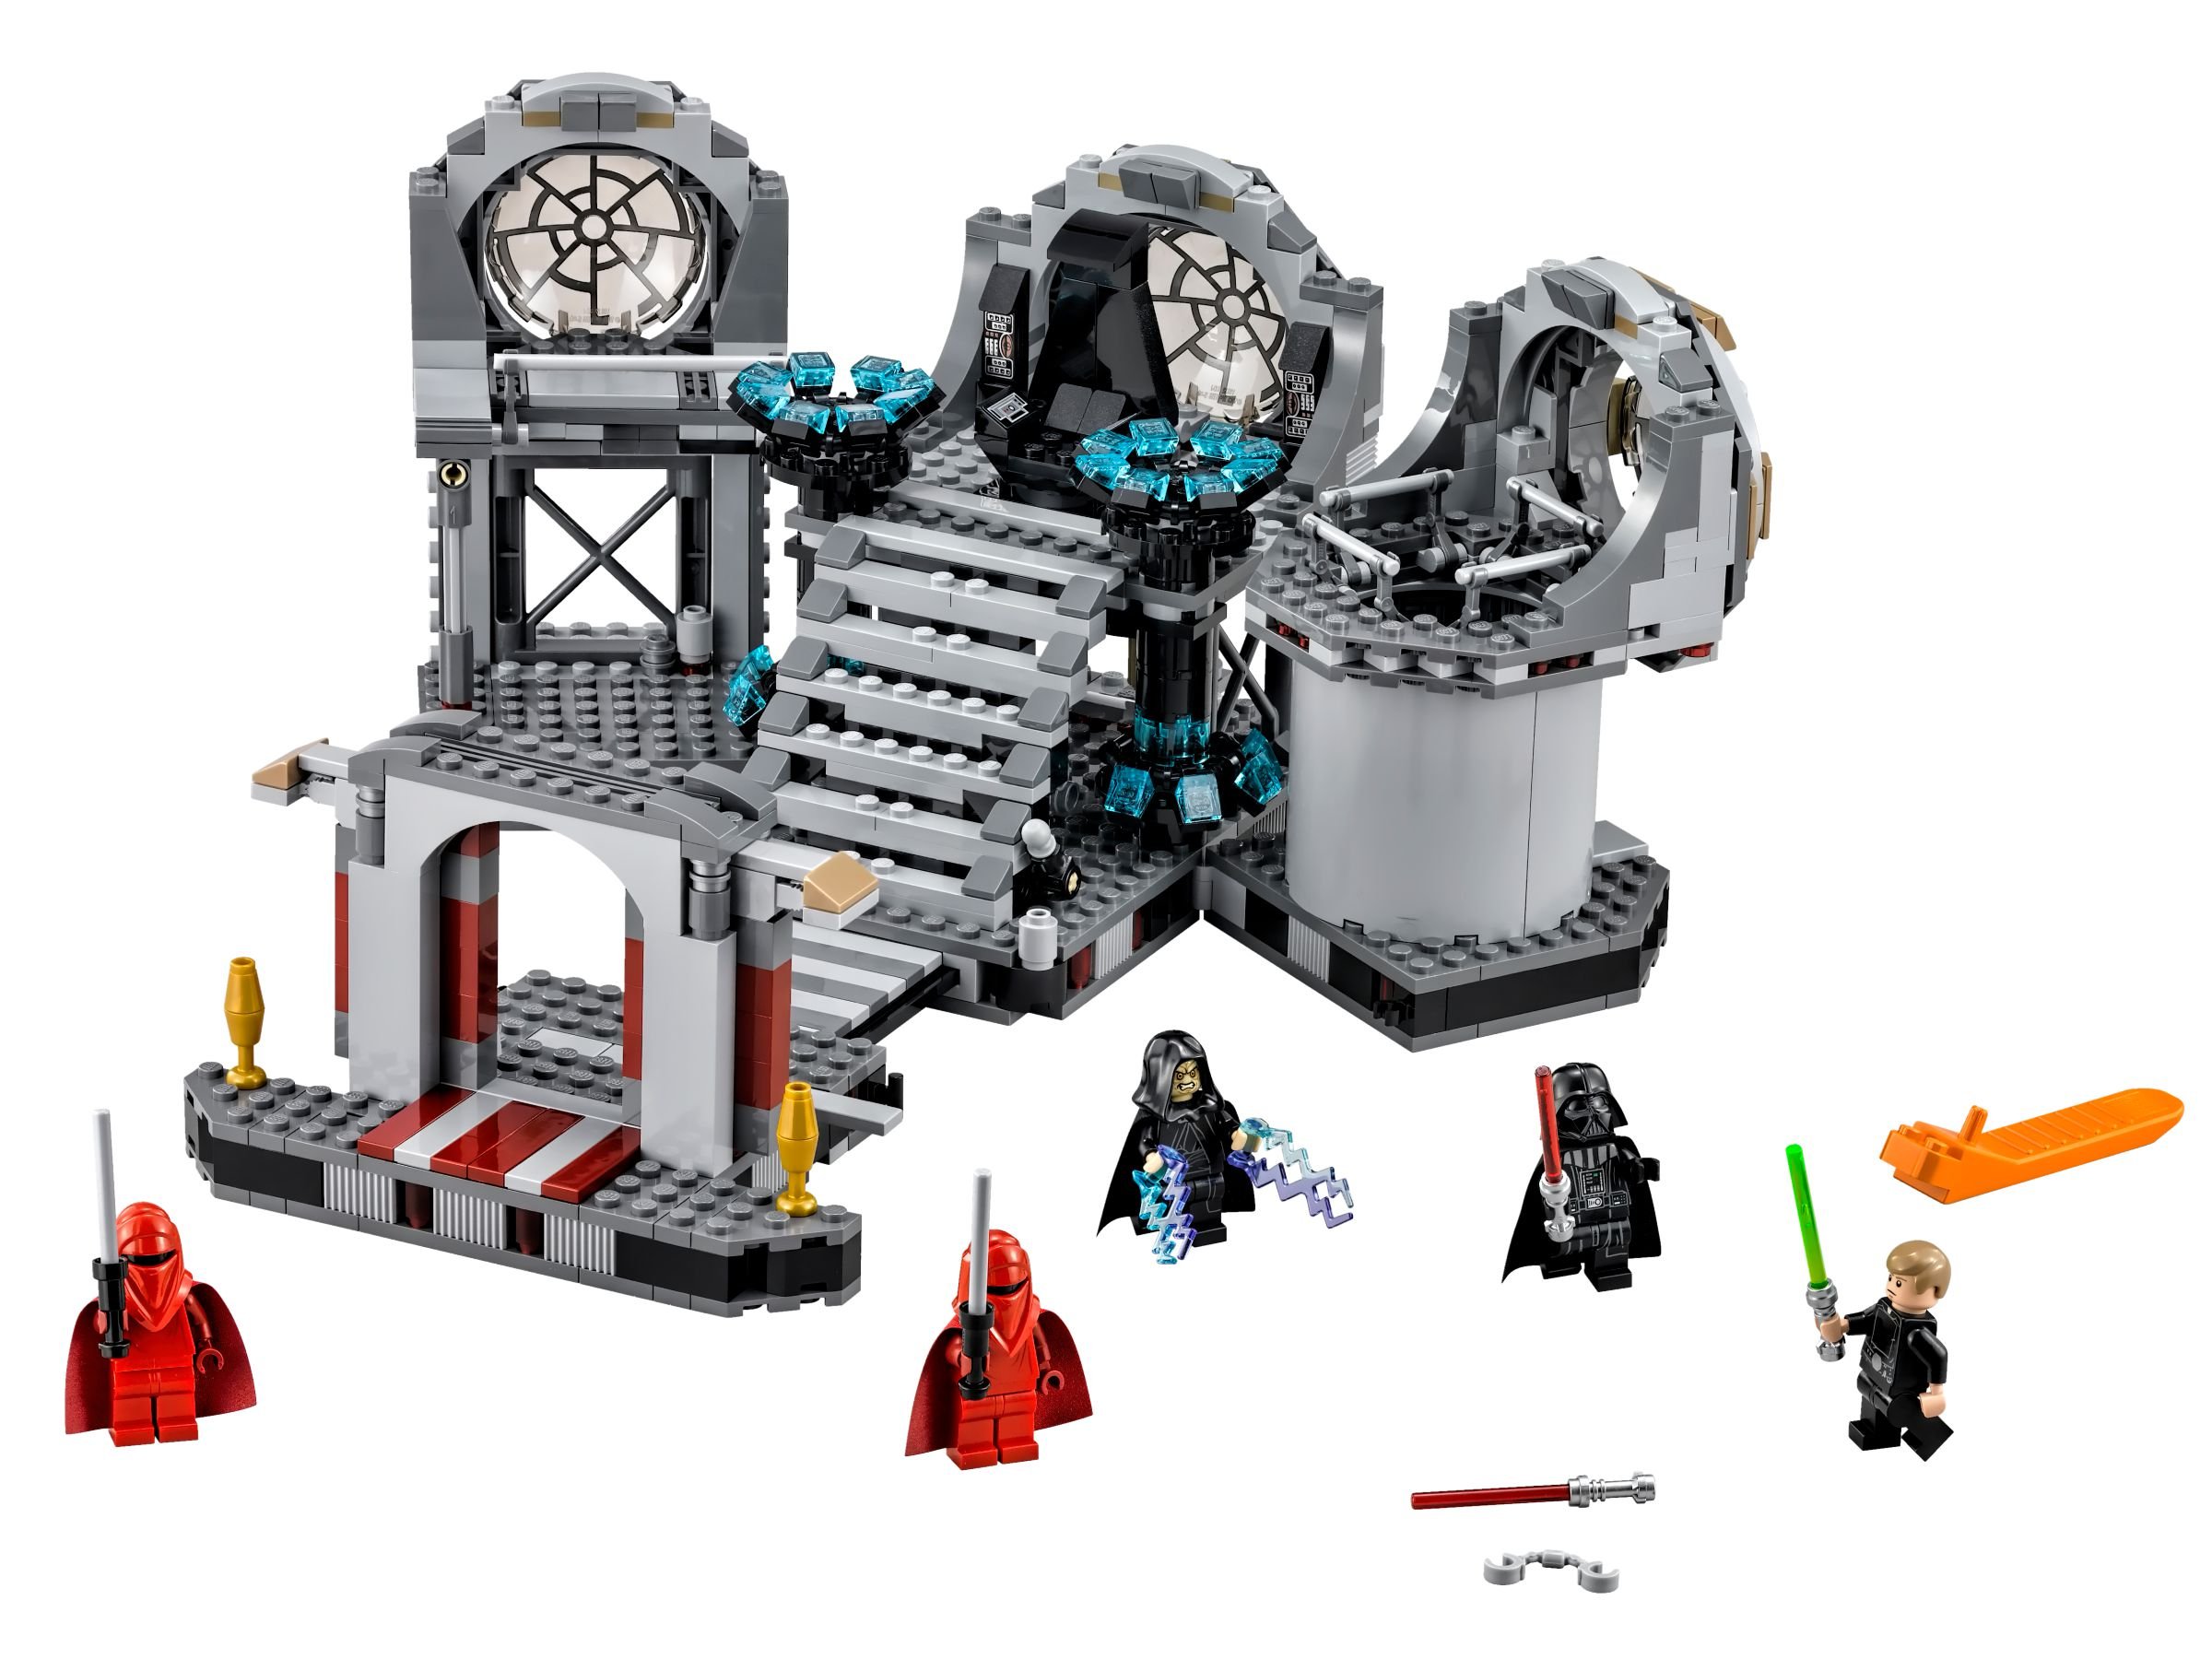 LEGO Star Wars 75093 Death Star™ Final Duel LEGO_75093.jpg